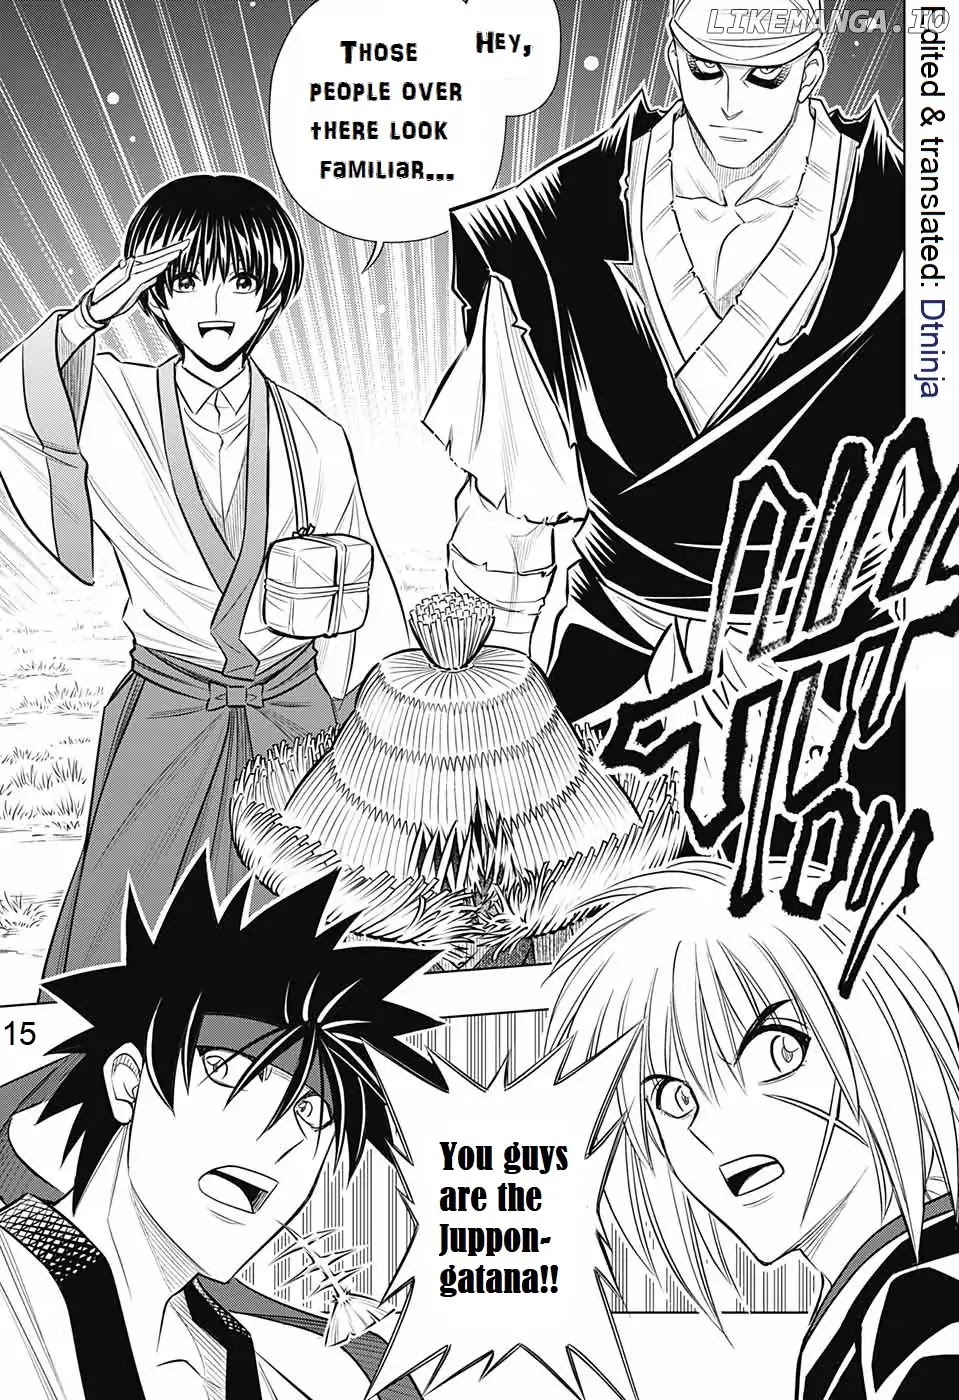 Rurouni Kenshin: Hokkaido Arc chapter 14 - page 15